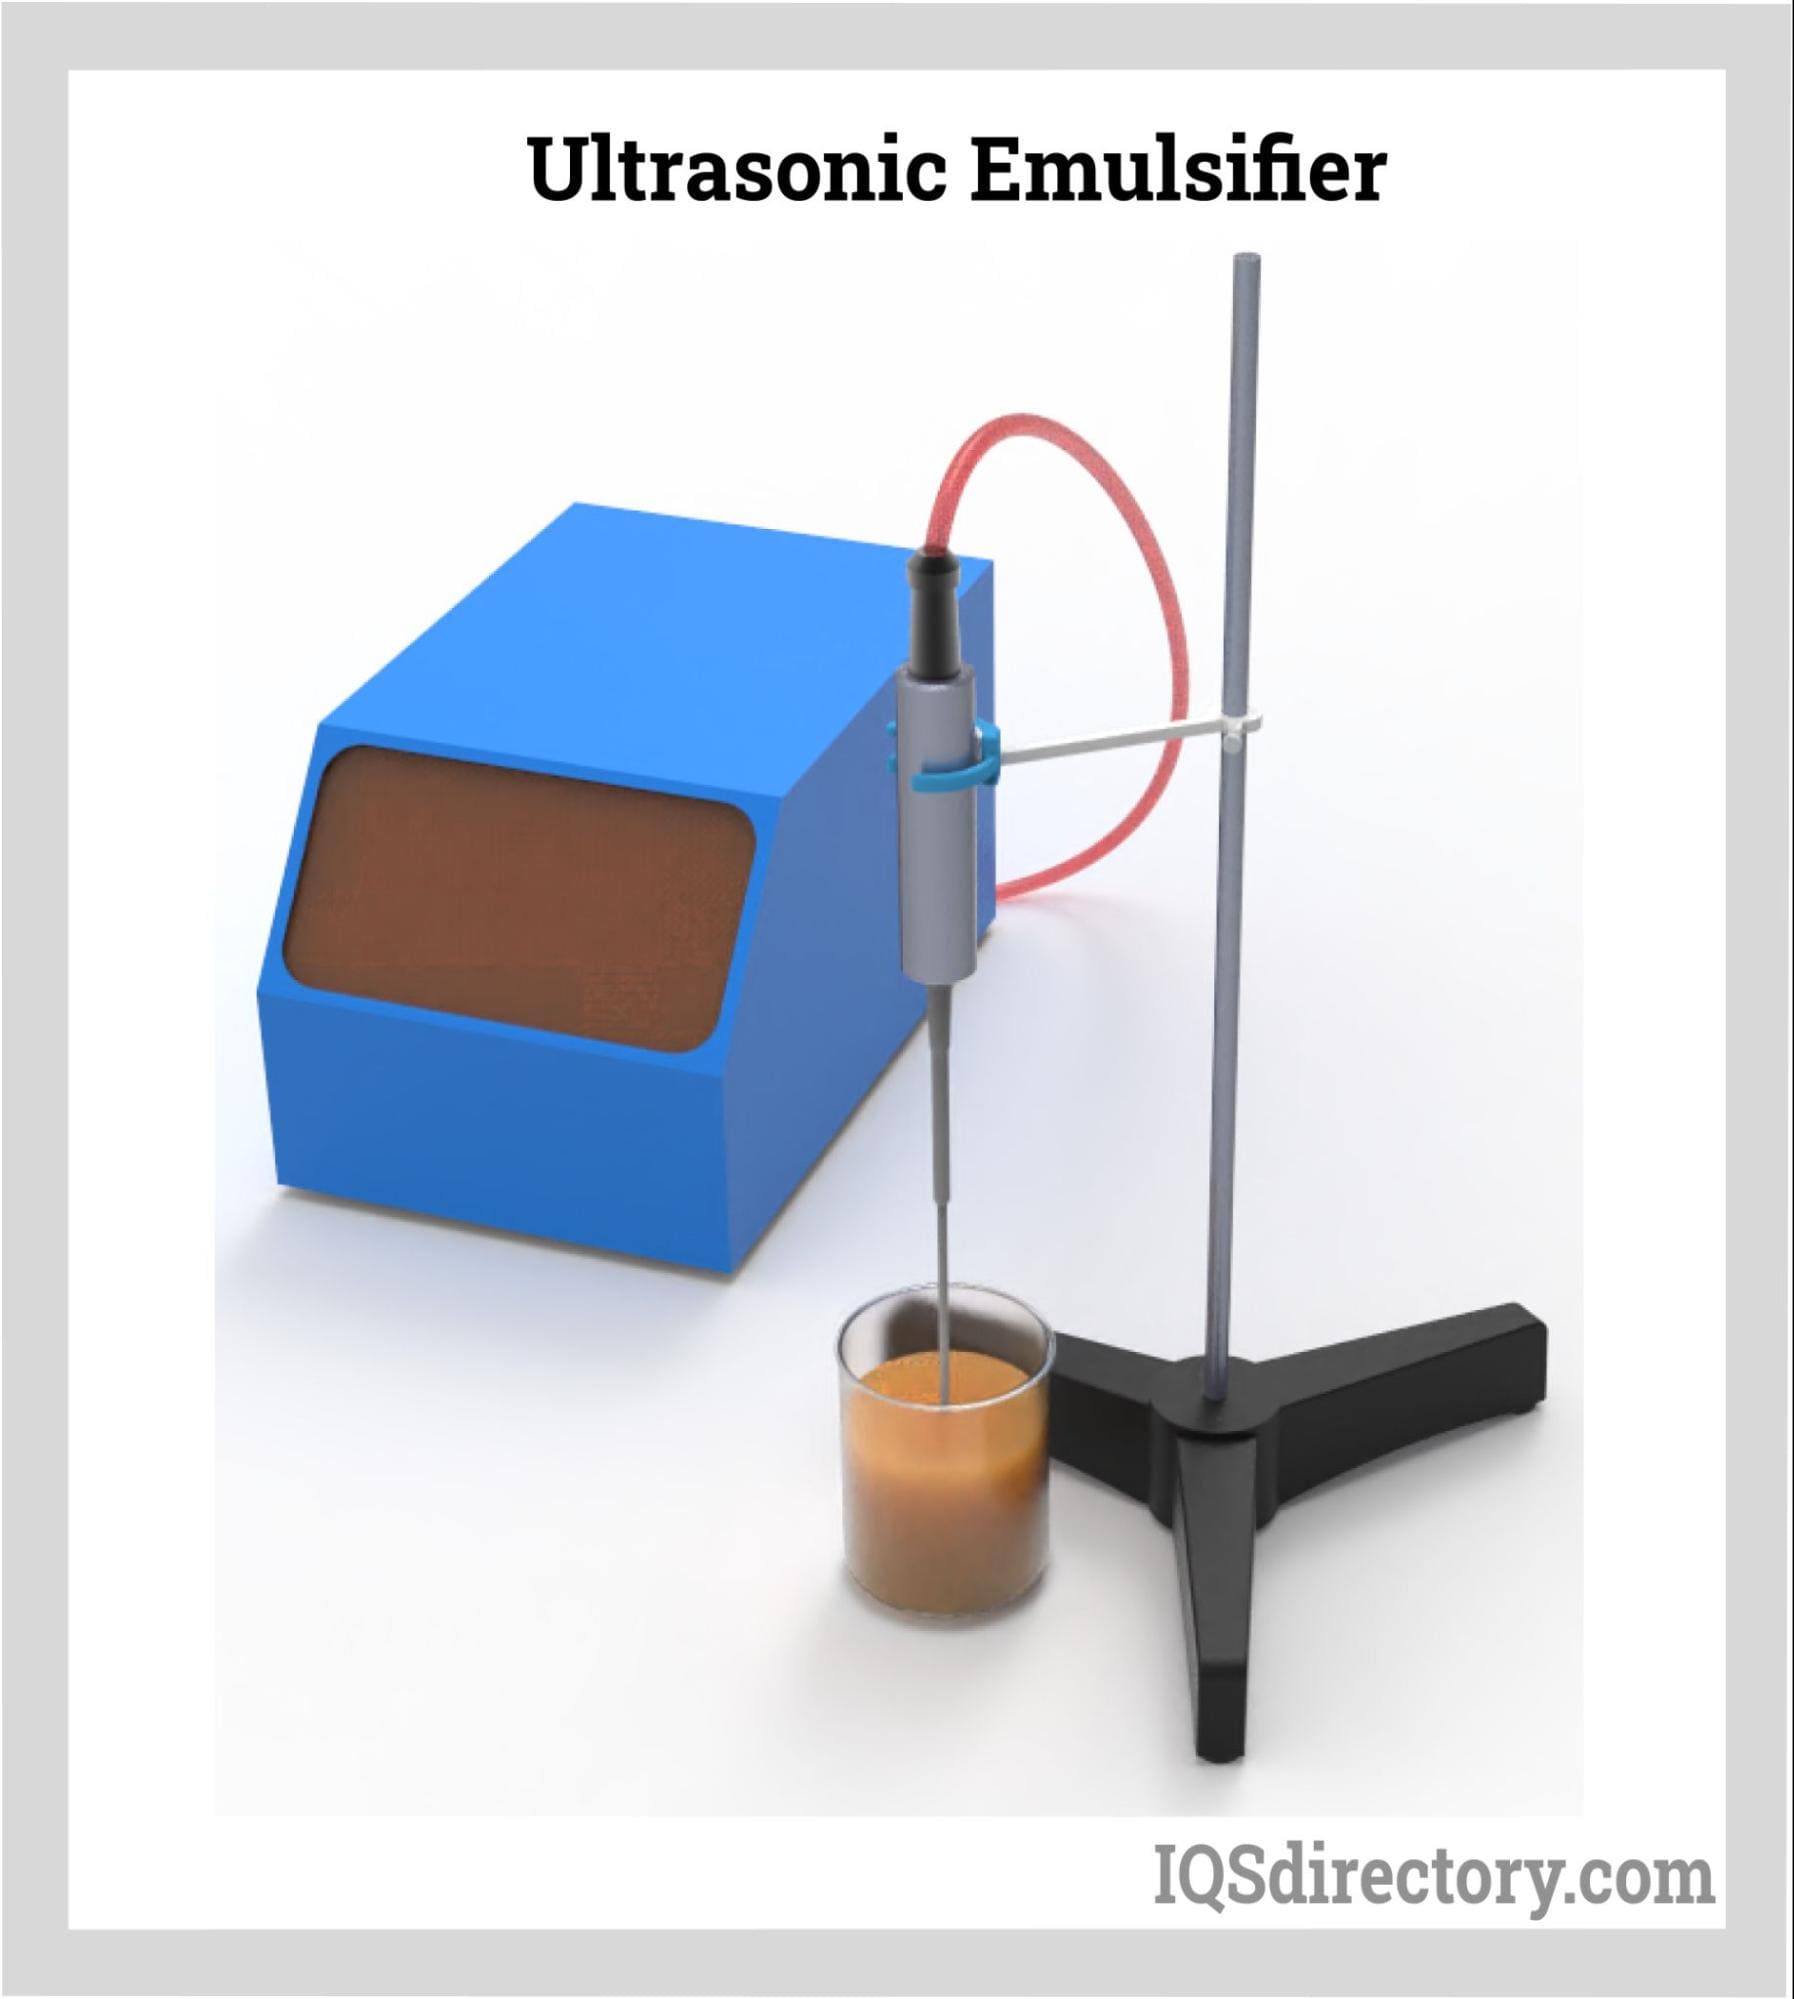 Ultrasonic Emulsifier